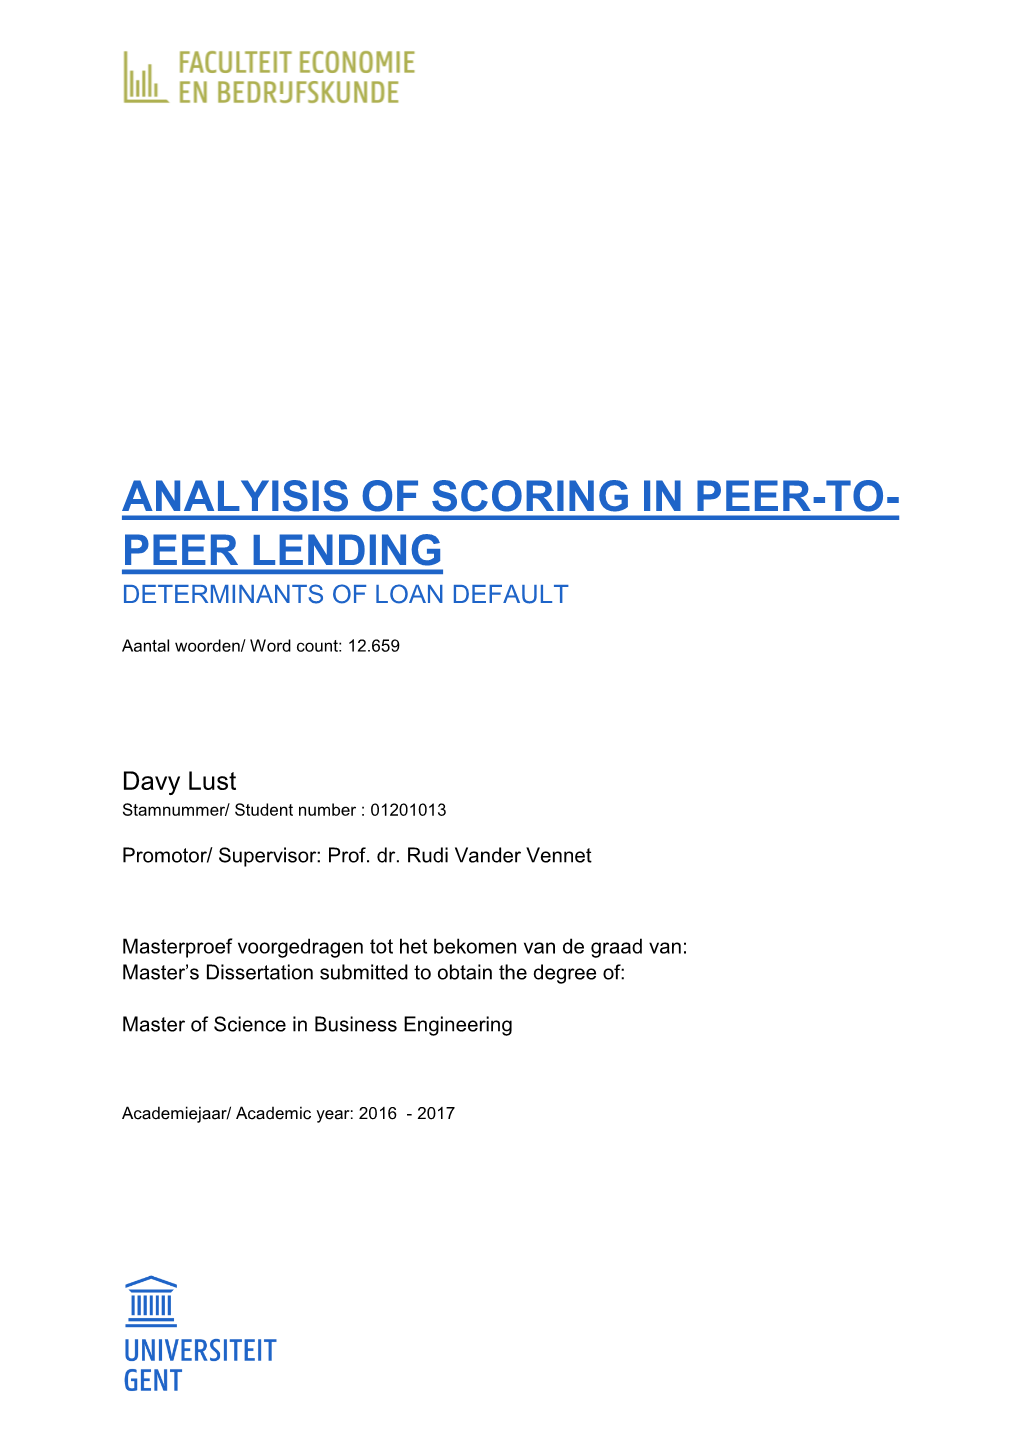 Analyisis of Scoring in Peer-To- Peer Lending Determinants of Loan Default